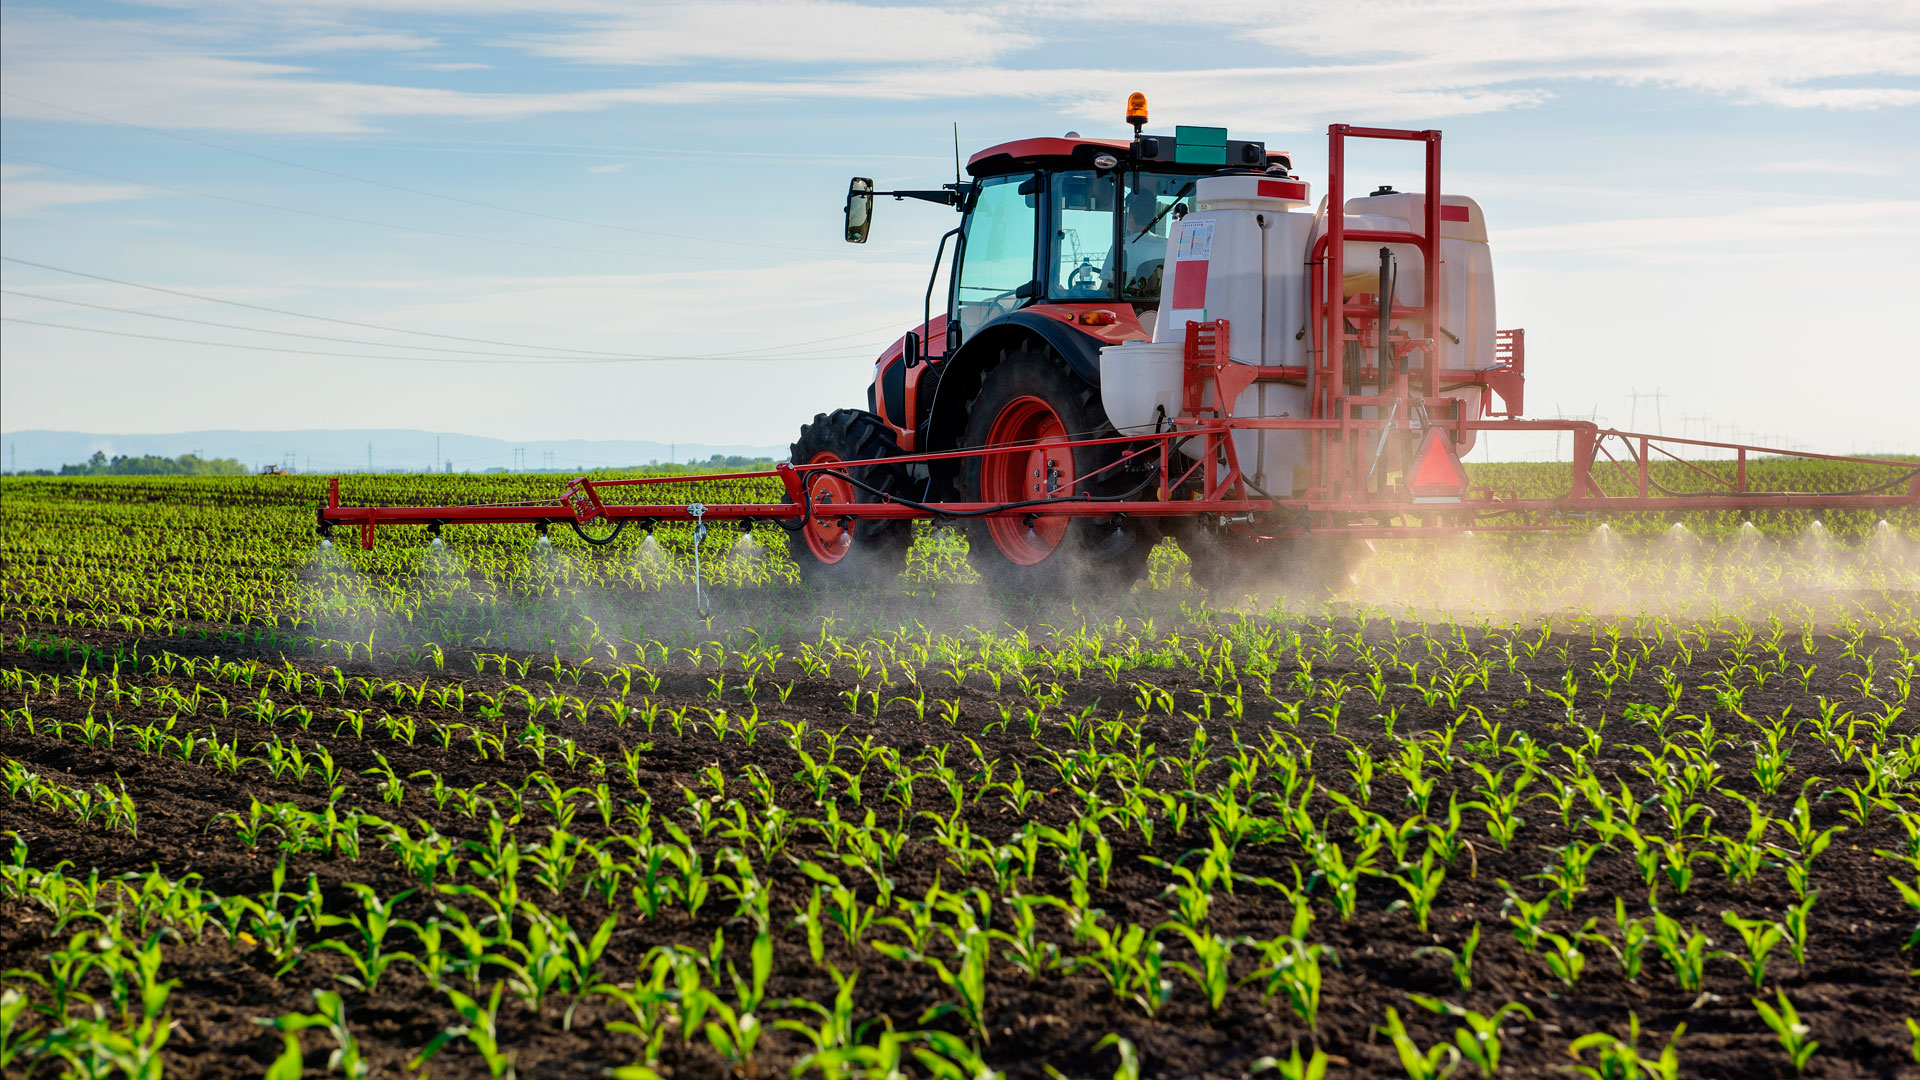 BAM! News - “Les pesticides et le grand effondrement“